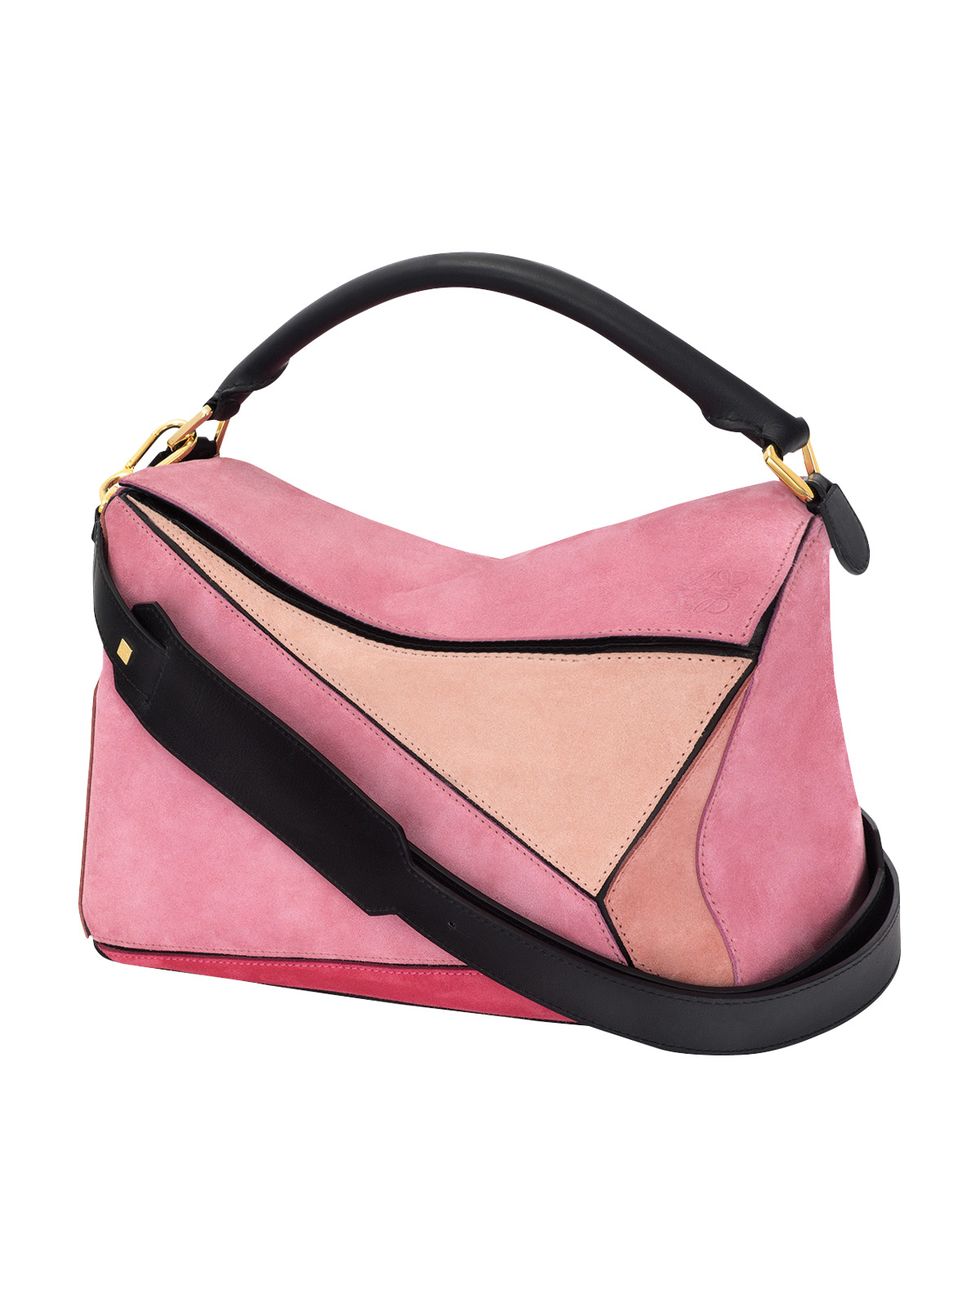 Product, Style, Pink, Fashion, Black, Bag, Leather, Beige, Shoulder bag, Maroon, 